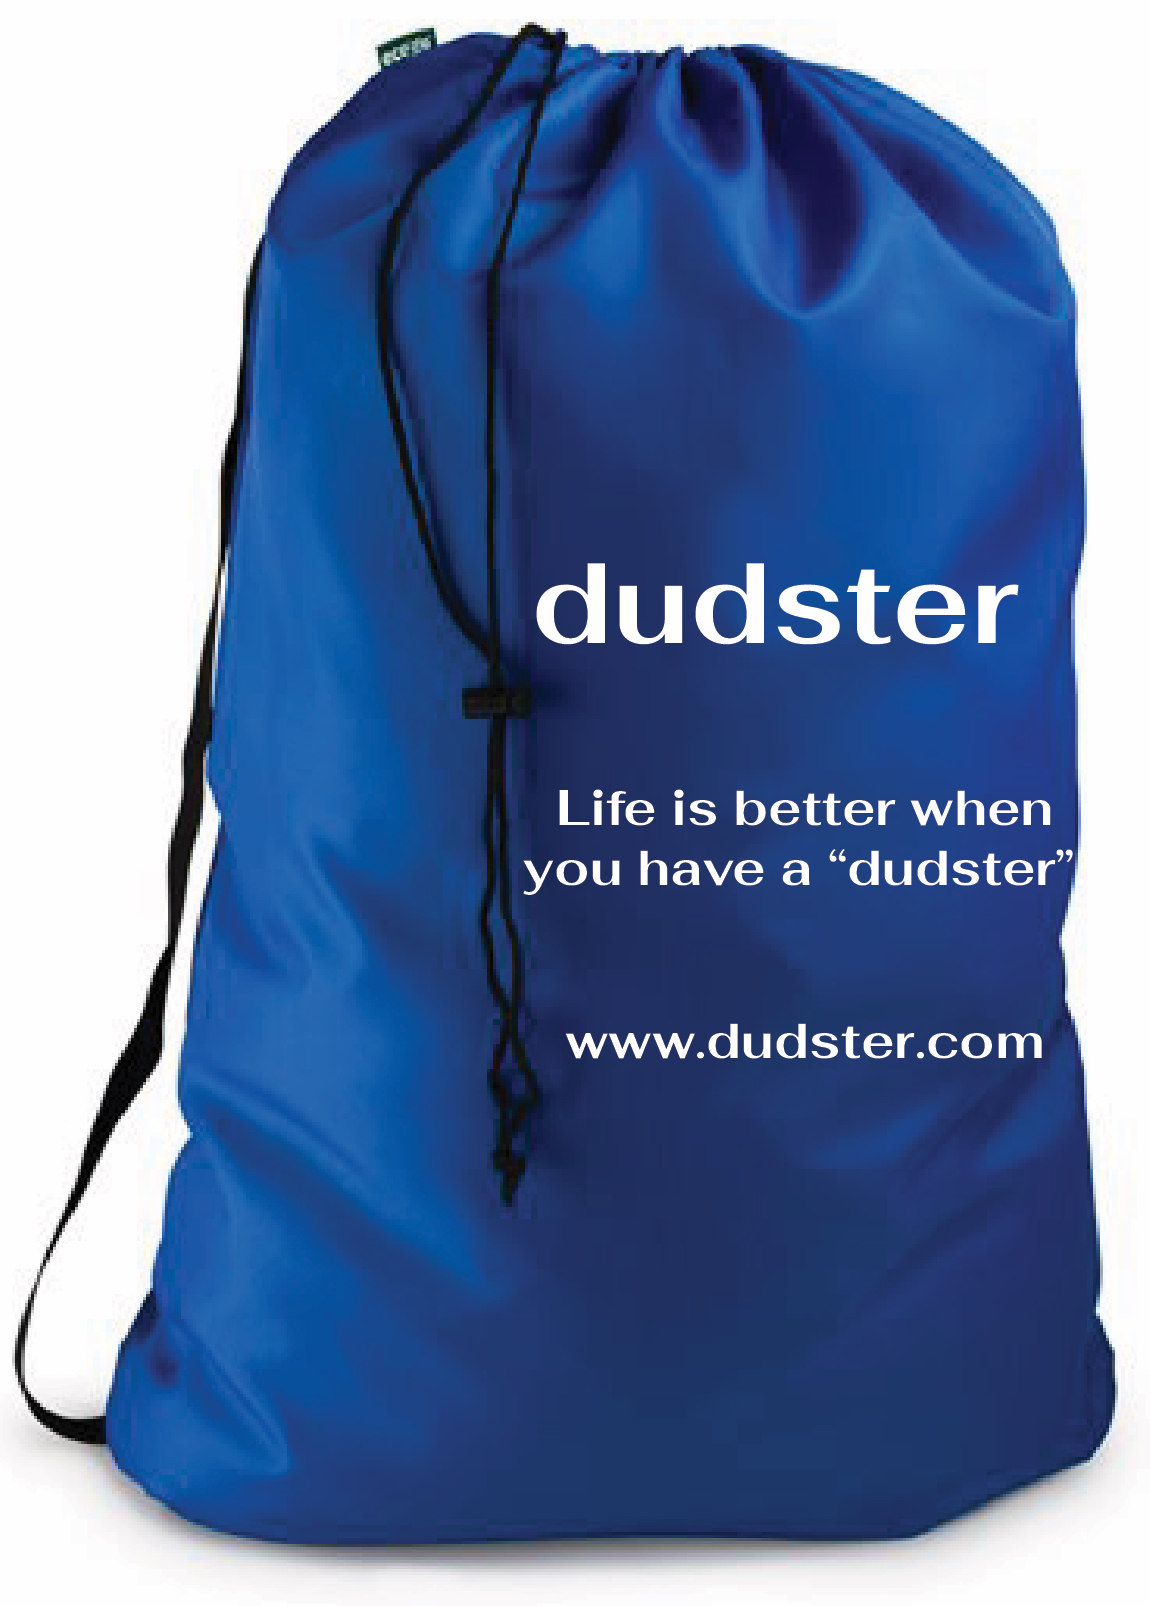 Dudster Blue Bag